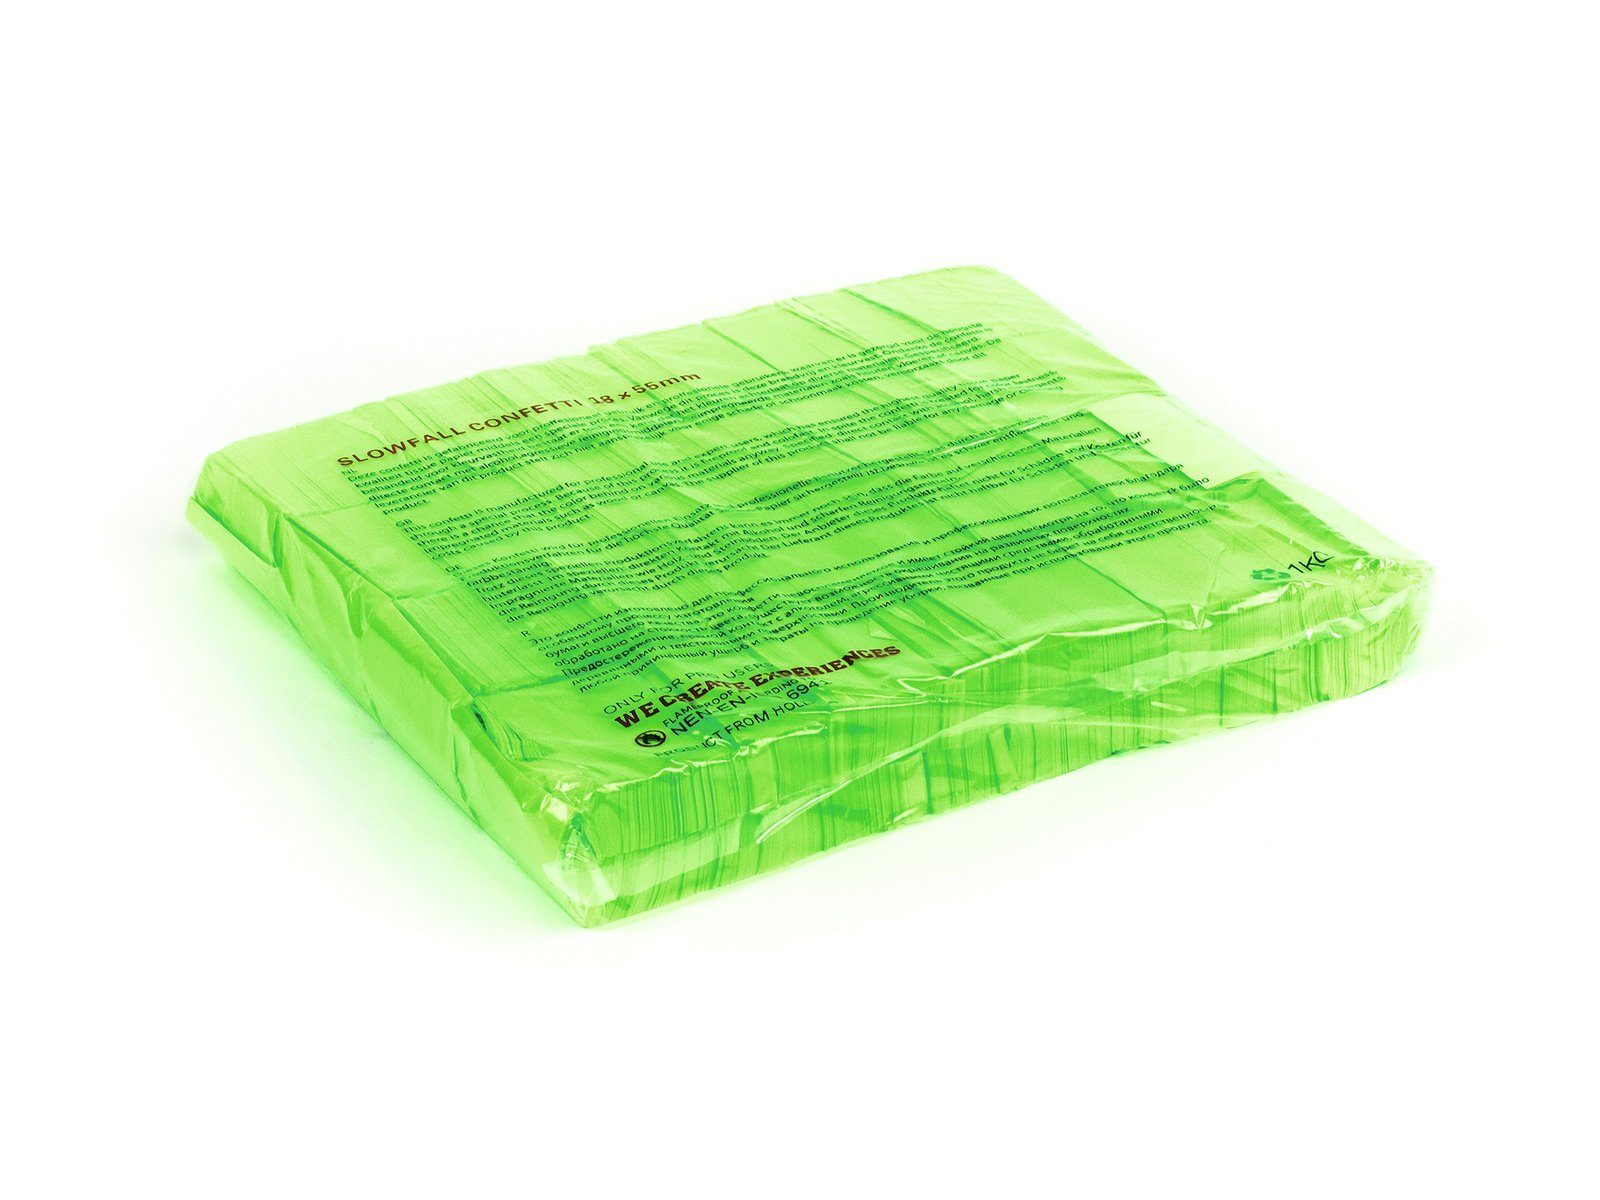 TCM Fx Konfetti Slowfall Konfetti rechteckig 55x18mm, neon, UV-aktiv, 1kg, verschiedene Farben erhältlich grün